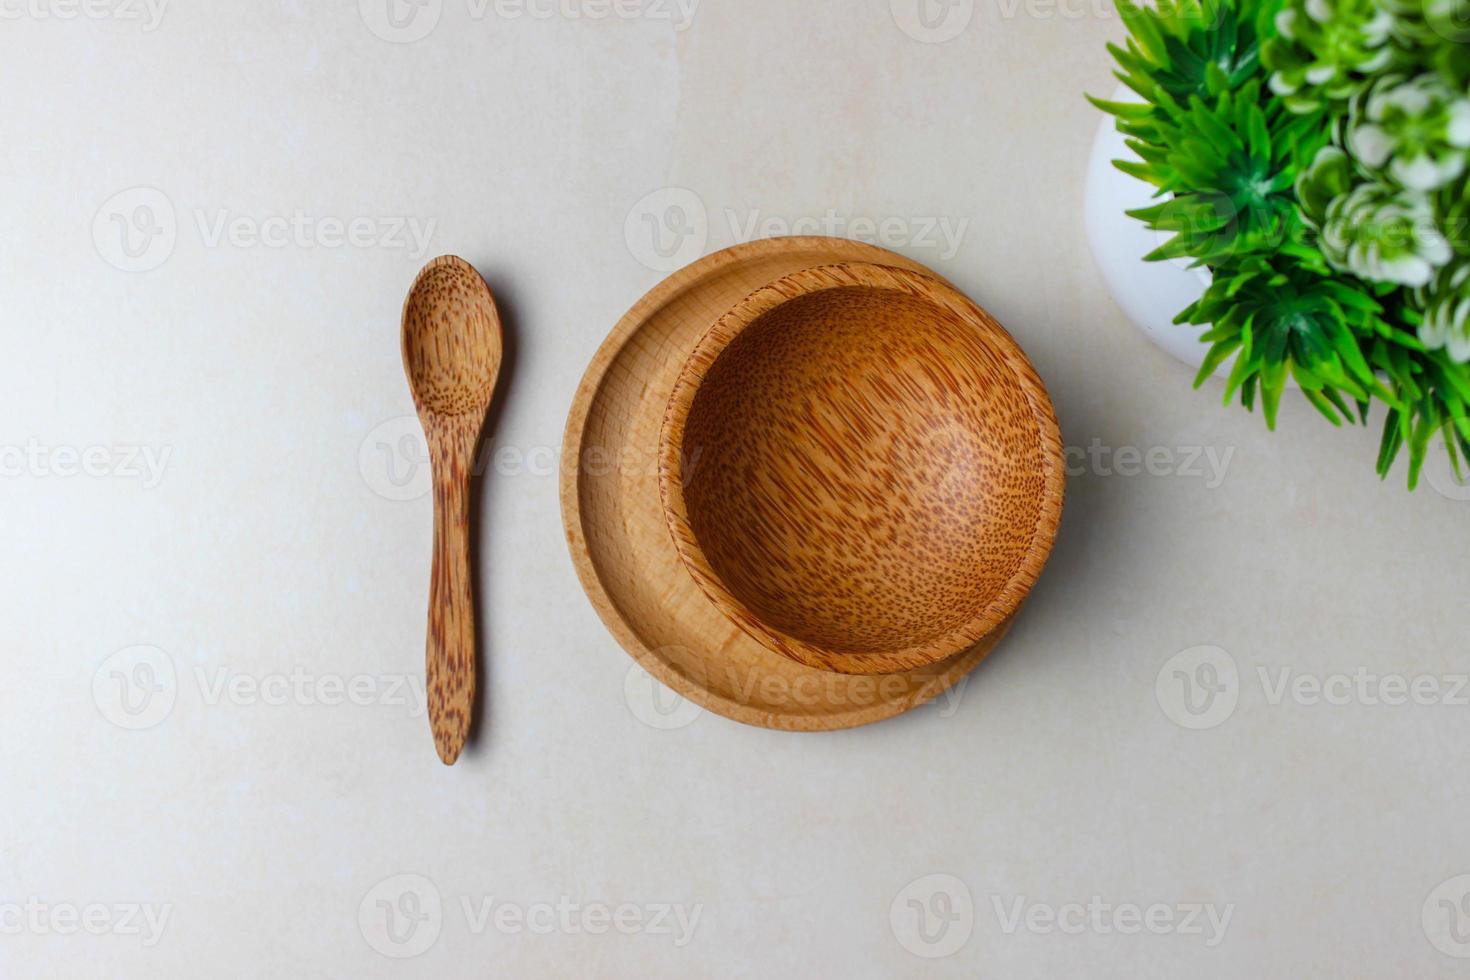 ustensiles en bois sur la table de la cuisine. assiette ronde, une cuillère, une plante verte. le concept de service, de cuisine, de cuisine, de détails intérieurs. vue de dessus photo